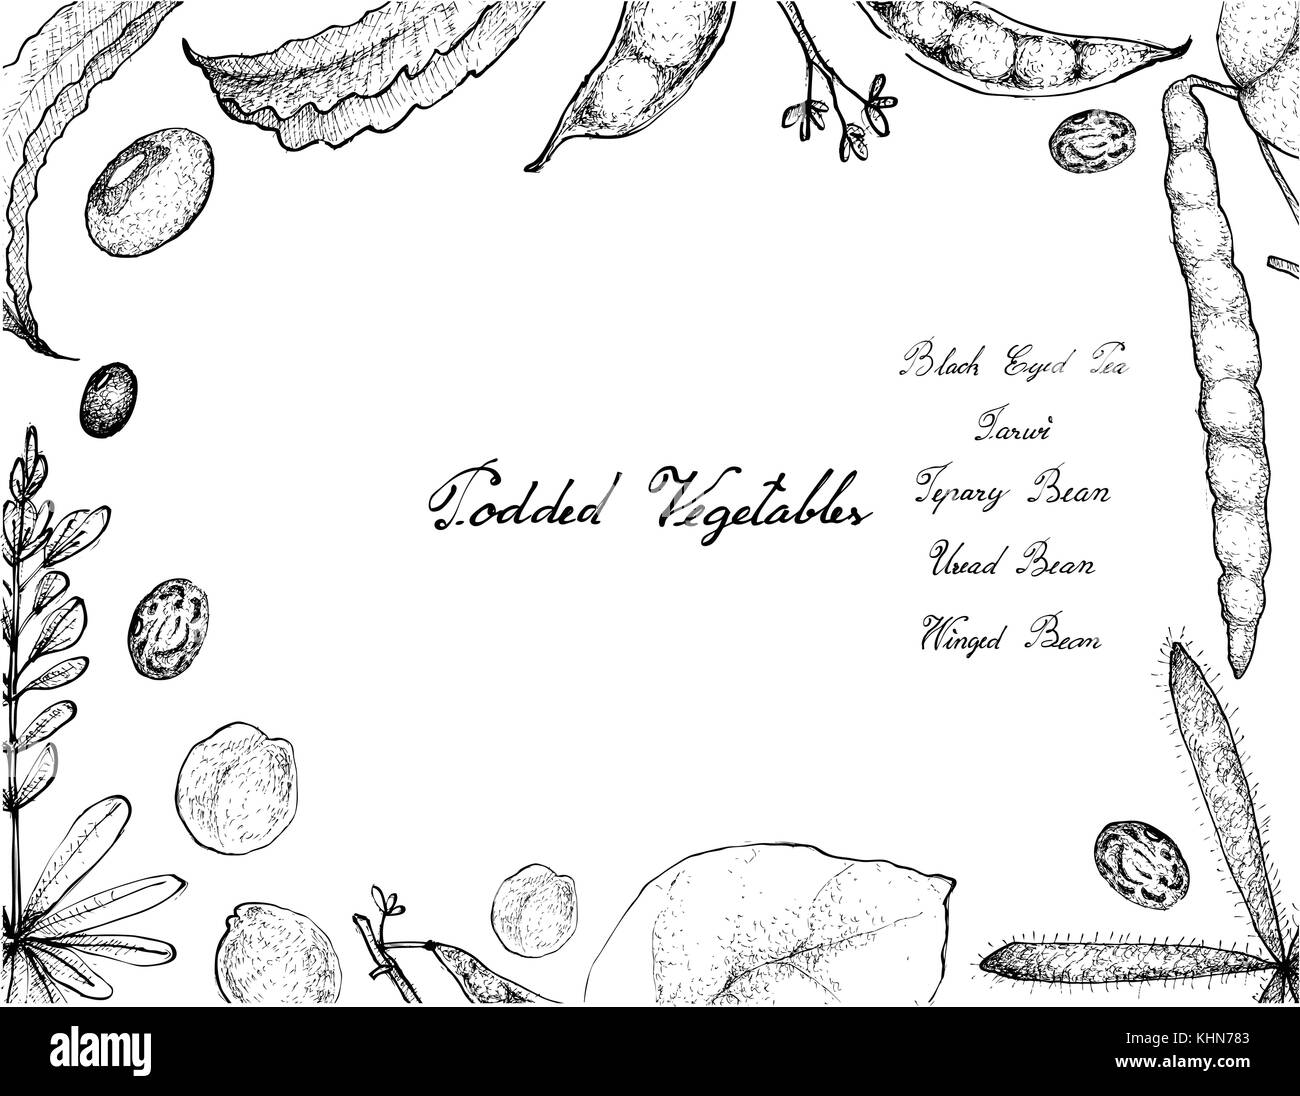 Vegetable, Illustration Frame of Hand Drawn Sketch Fresh Podded Vegetables Isolated on White Background. Stock Vector